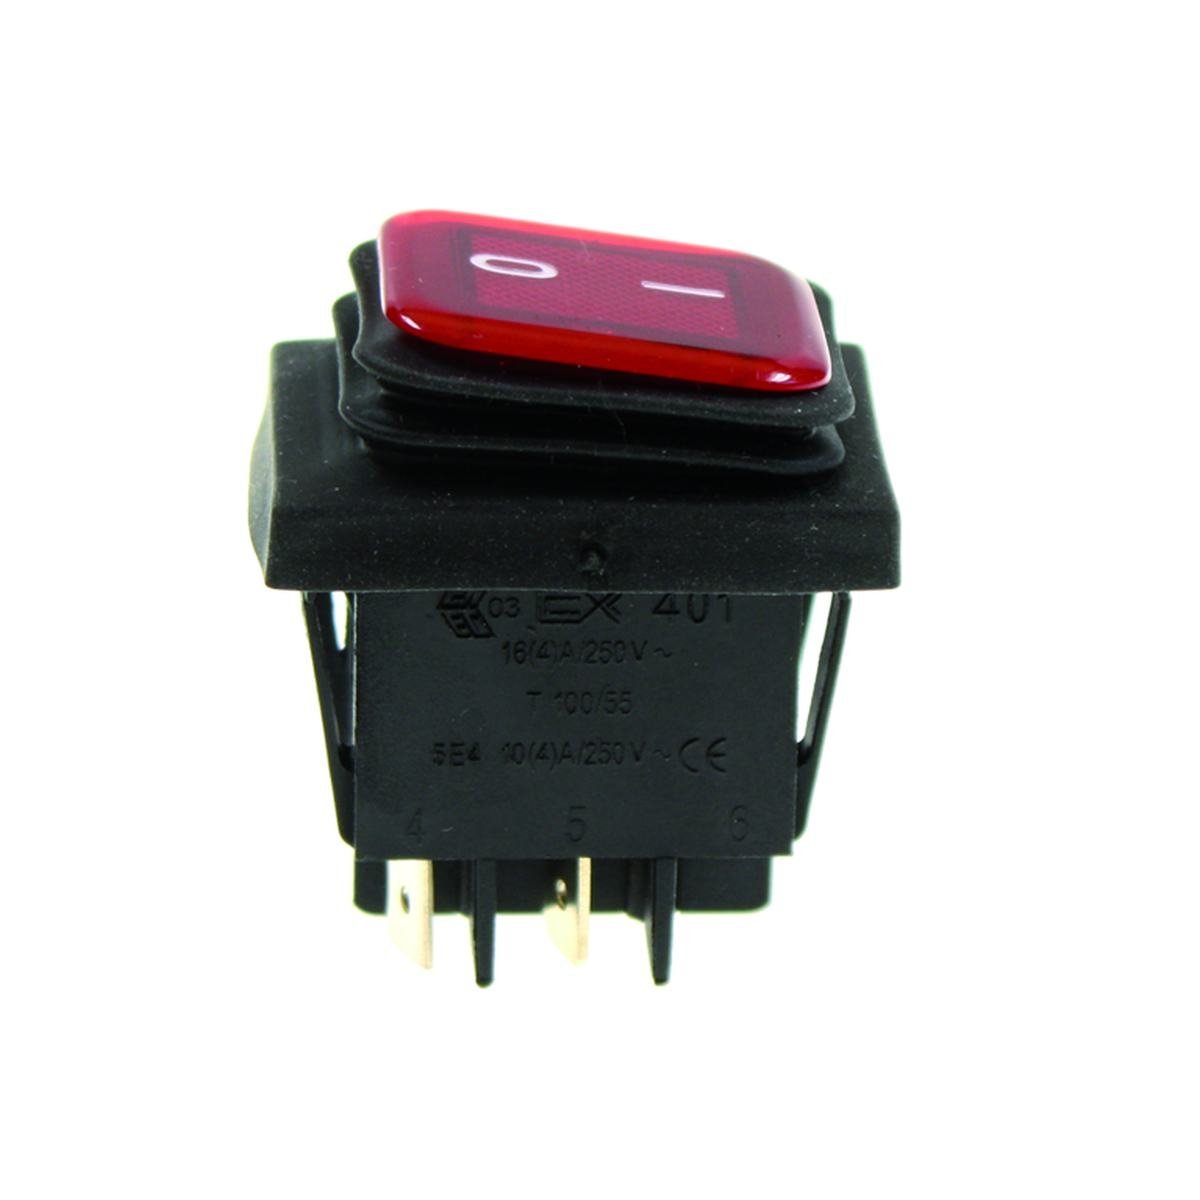 Dubbel strömbrytare svart med röd ljus 30 x 22 mm.